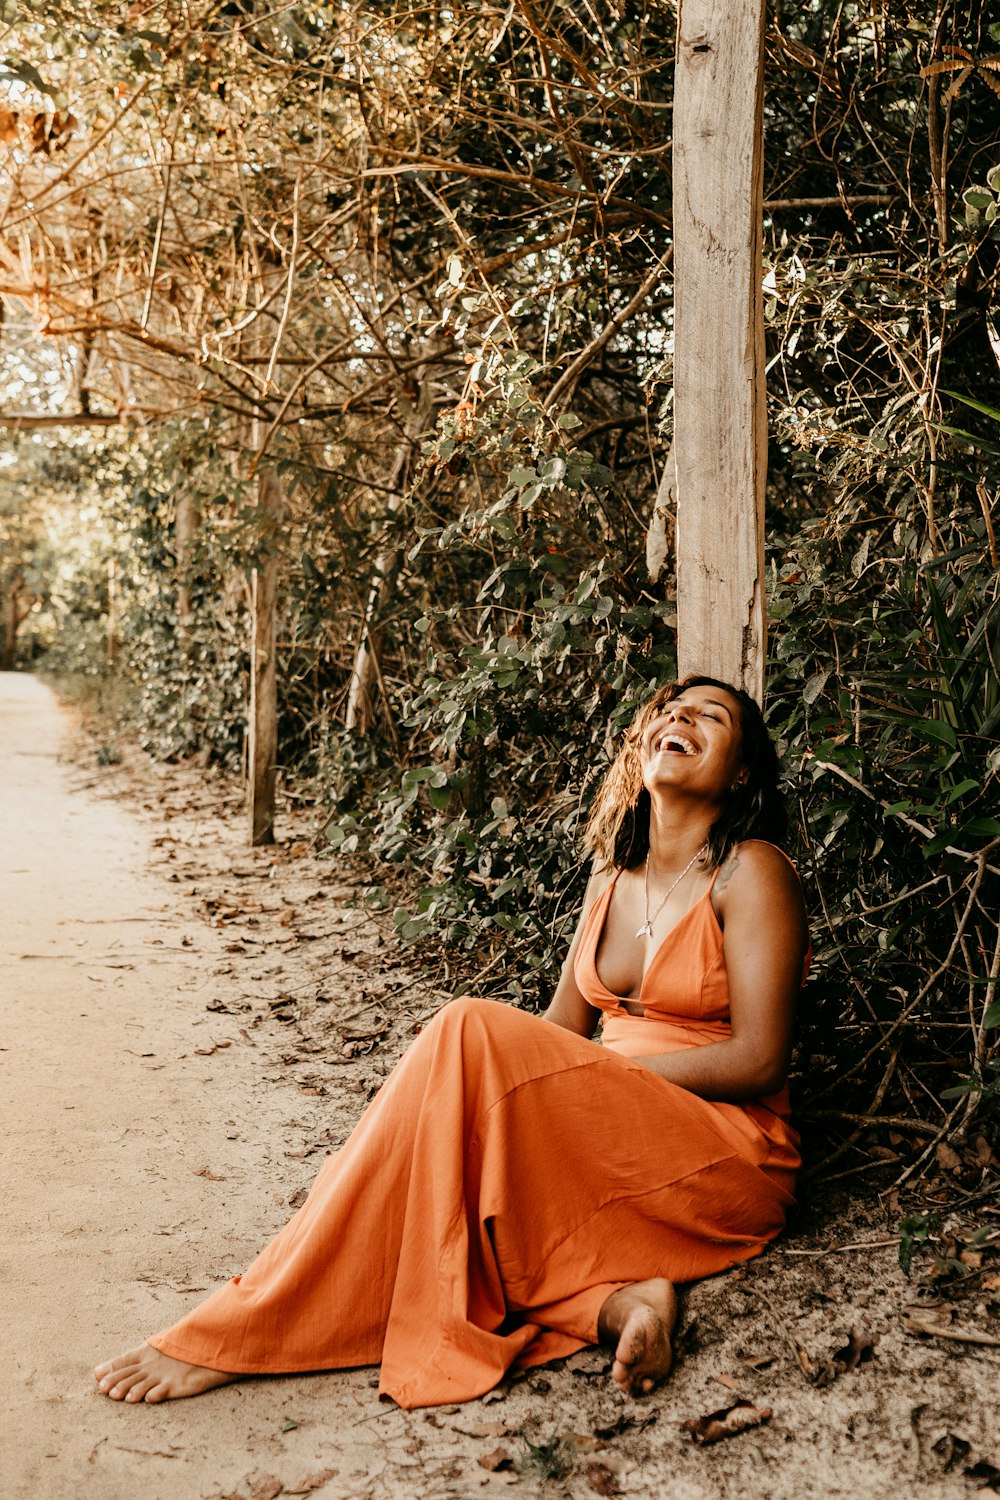 Barfüßige Frau im orangefarbenen Spaghettiträgerkleid lacht, während sie auf einem von grünen Bäumen umgebenen Weg sitzt